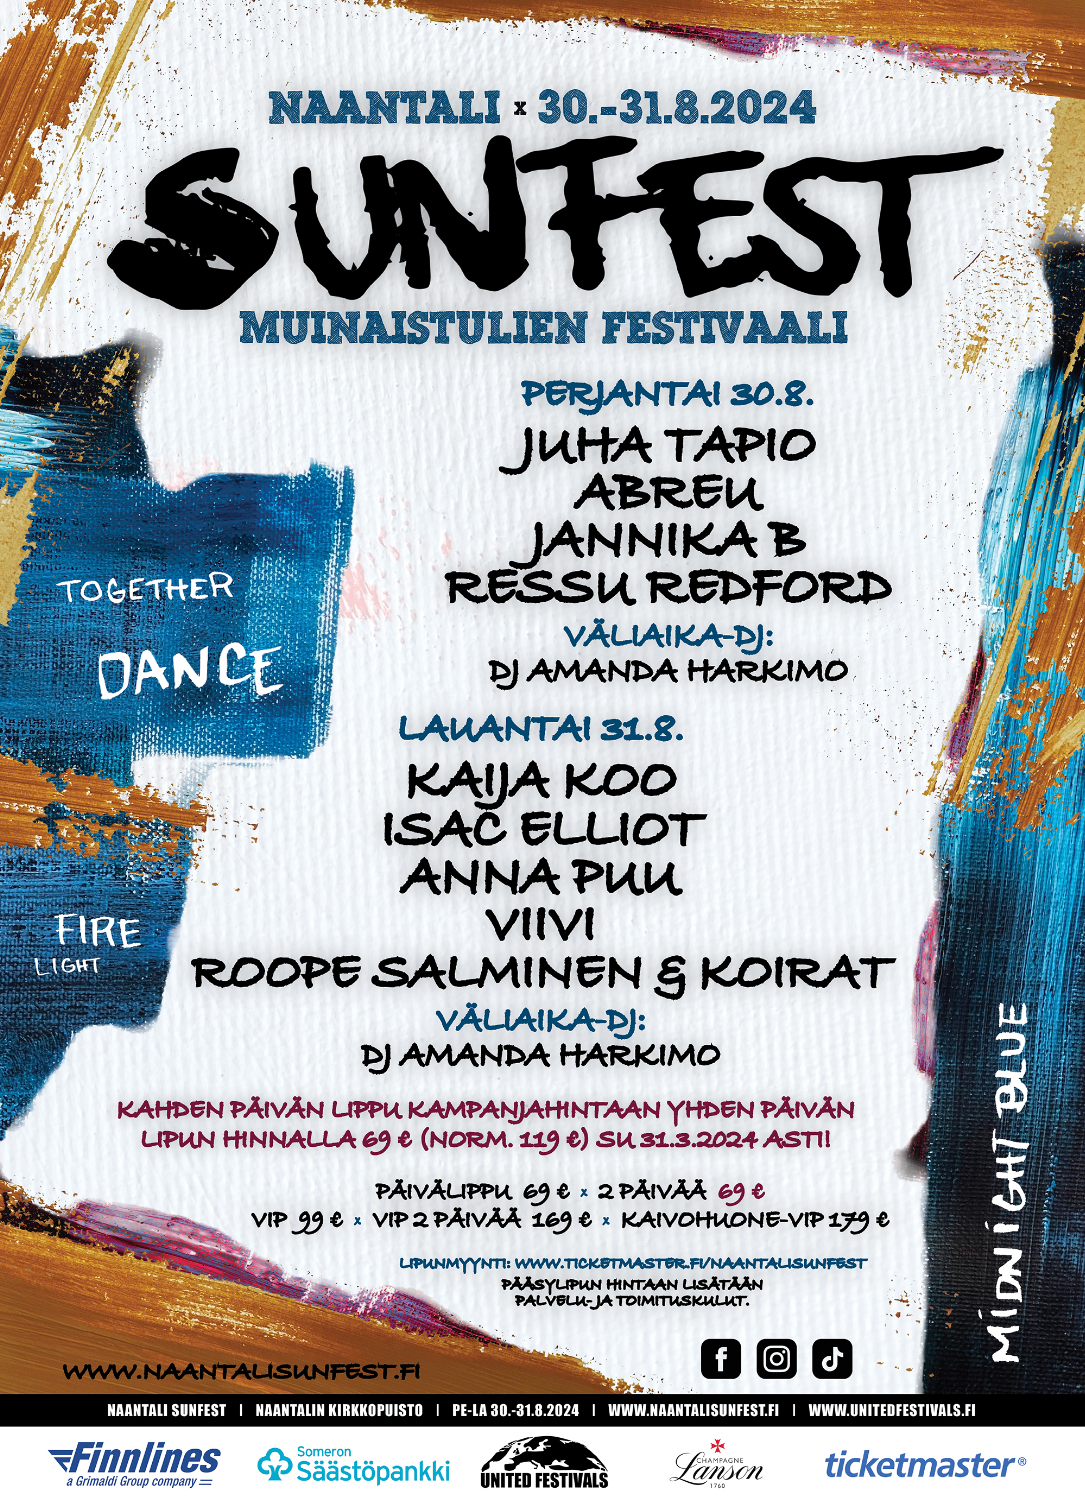 Naantali Sunfest järjestetään jälleen Muinaistulien viikonloppuna elokuussa 2024!